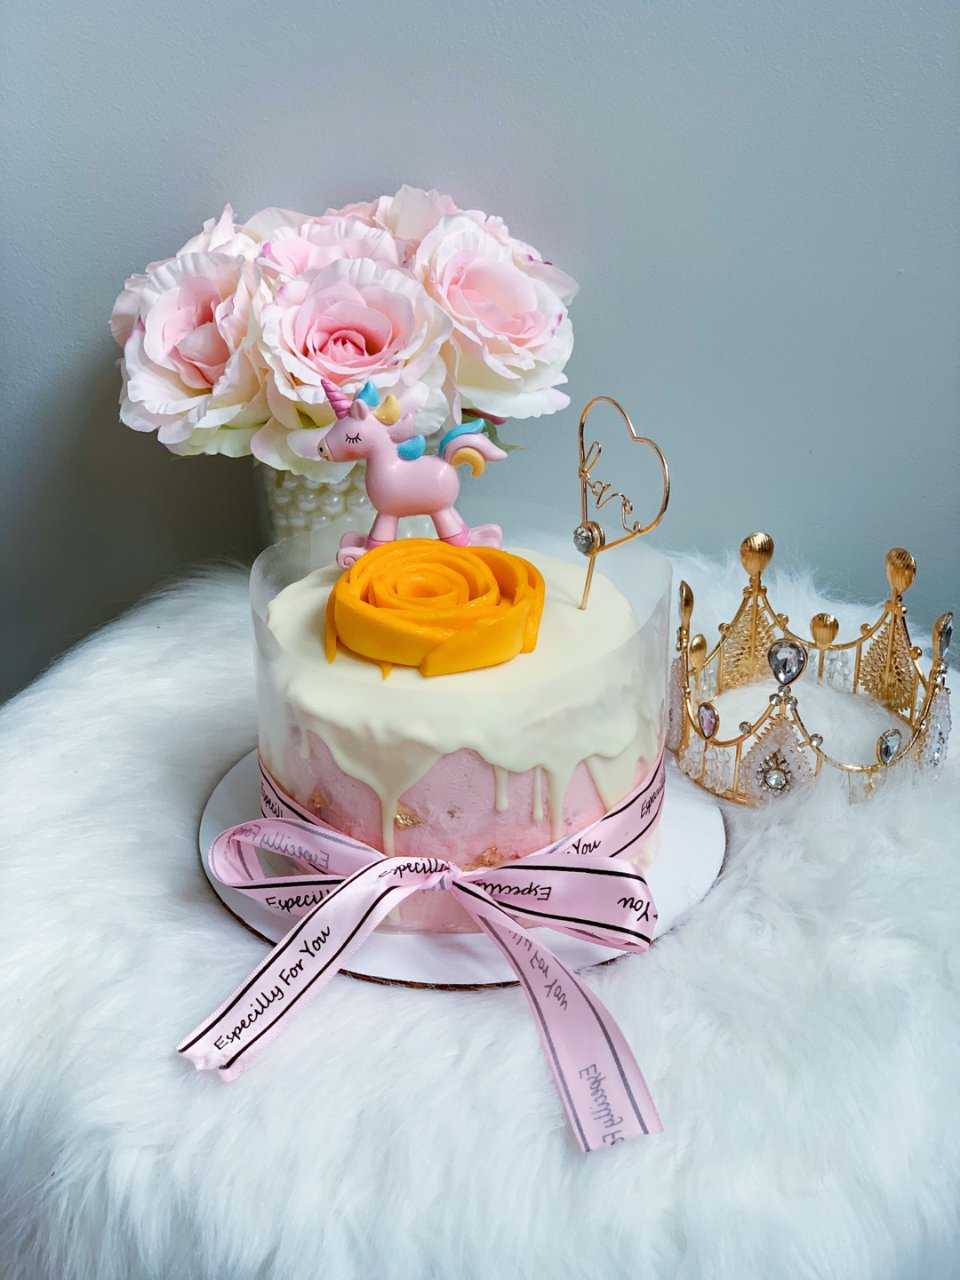 甜品控,蛋糕甜品DIY,生日蛋糕